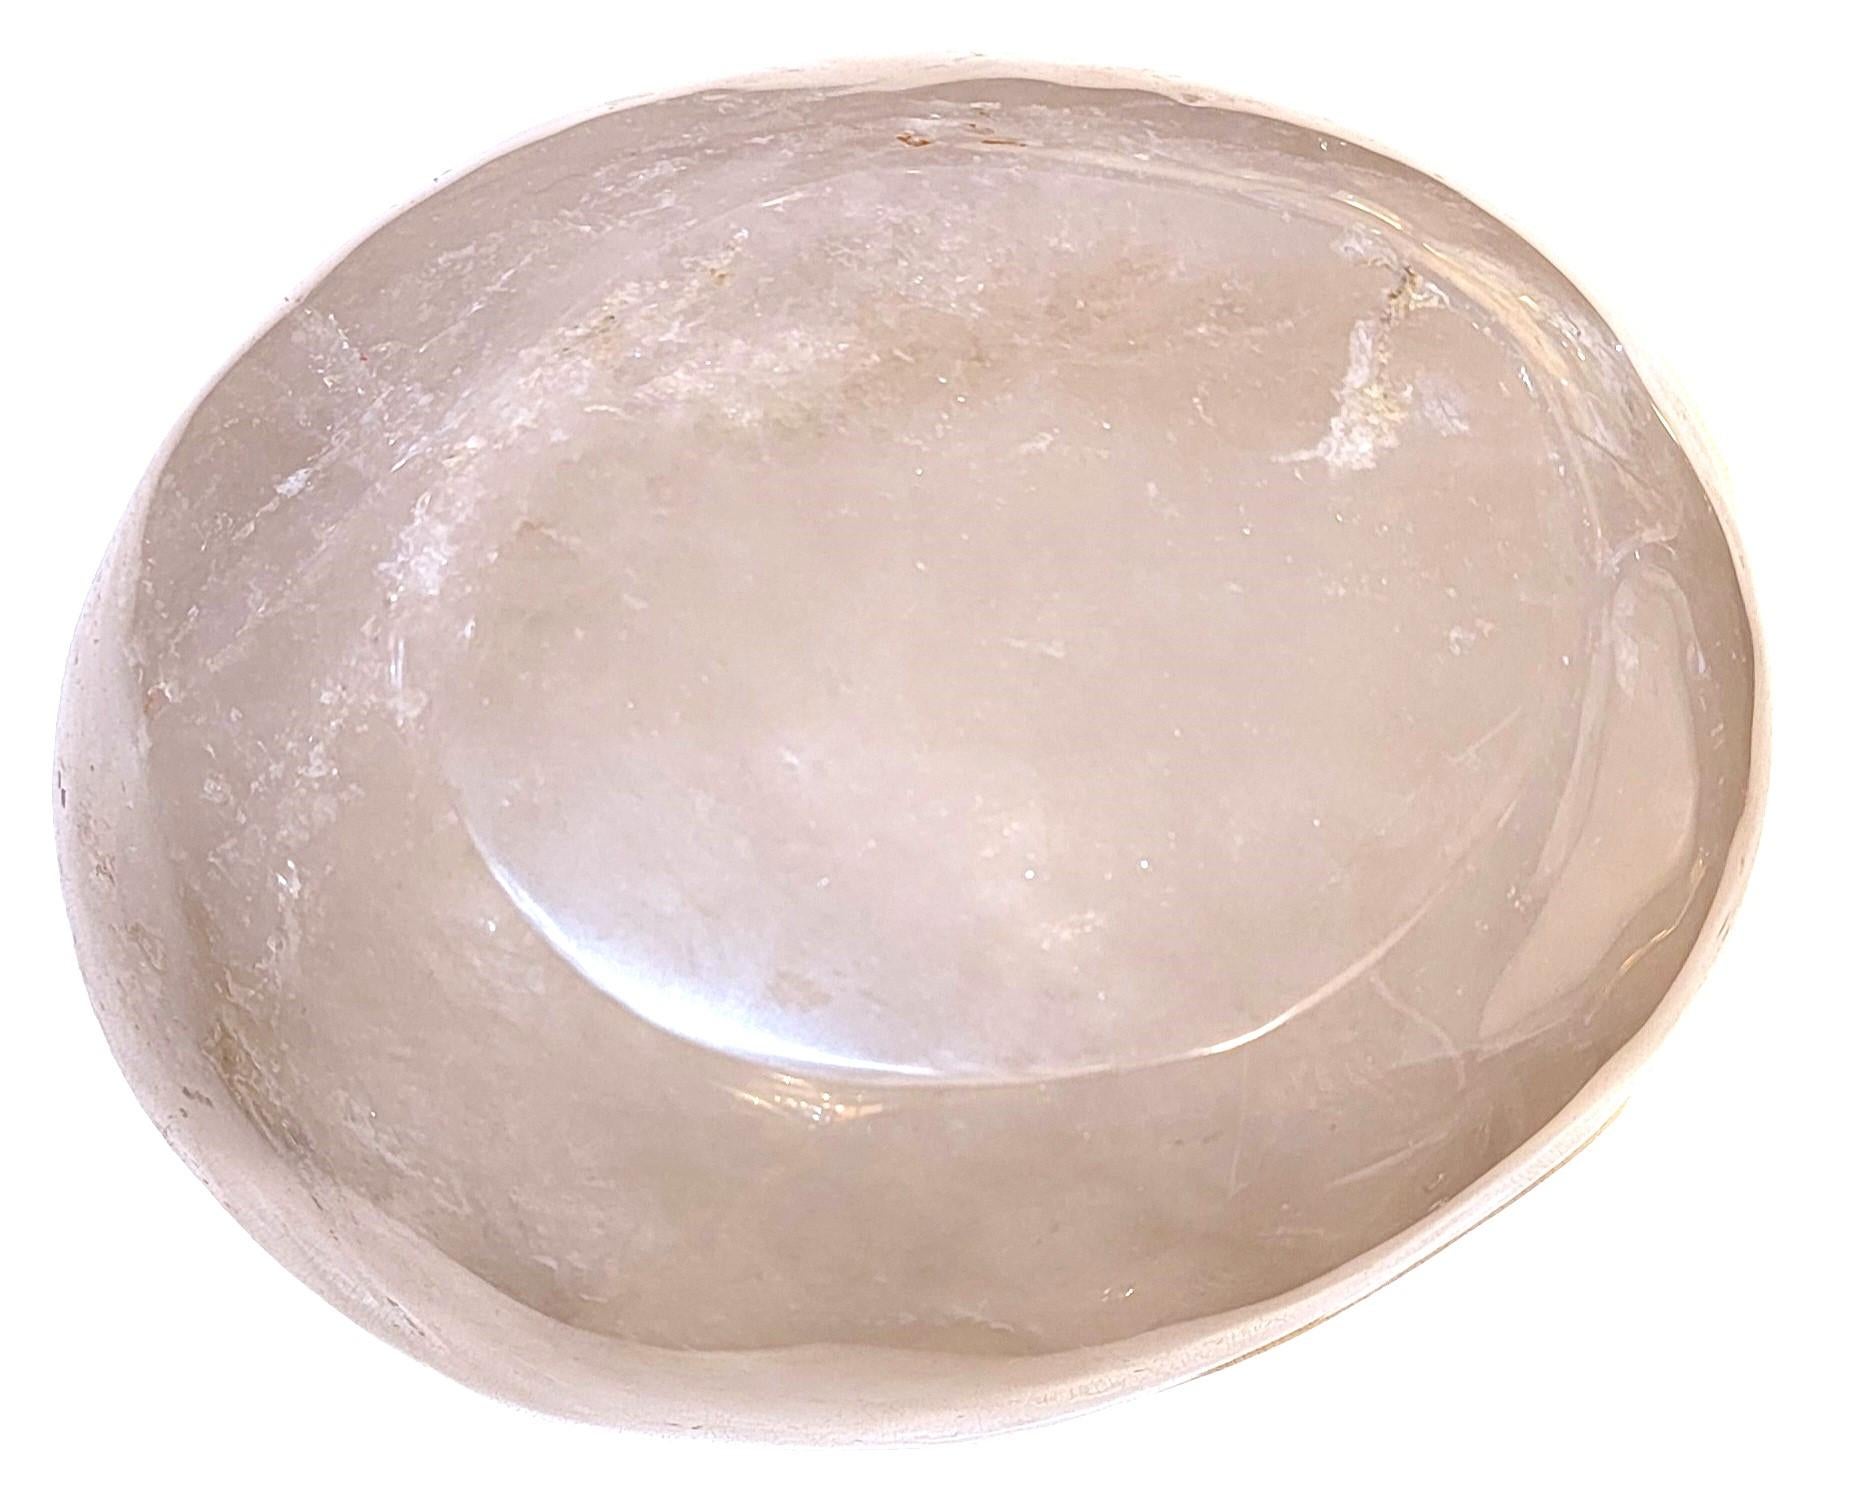 Vintage Italian Rock Crystal Hand Carved Bowl . Magnifique cristal transparent.  Poids et design exceptionnels. Dimensions approximatives - 8w x 10d x5h
